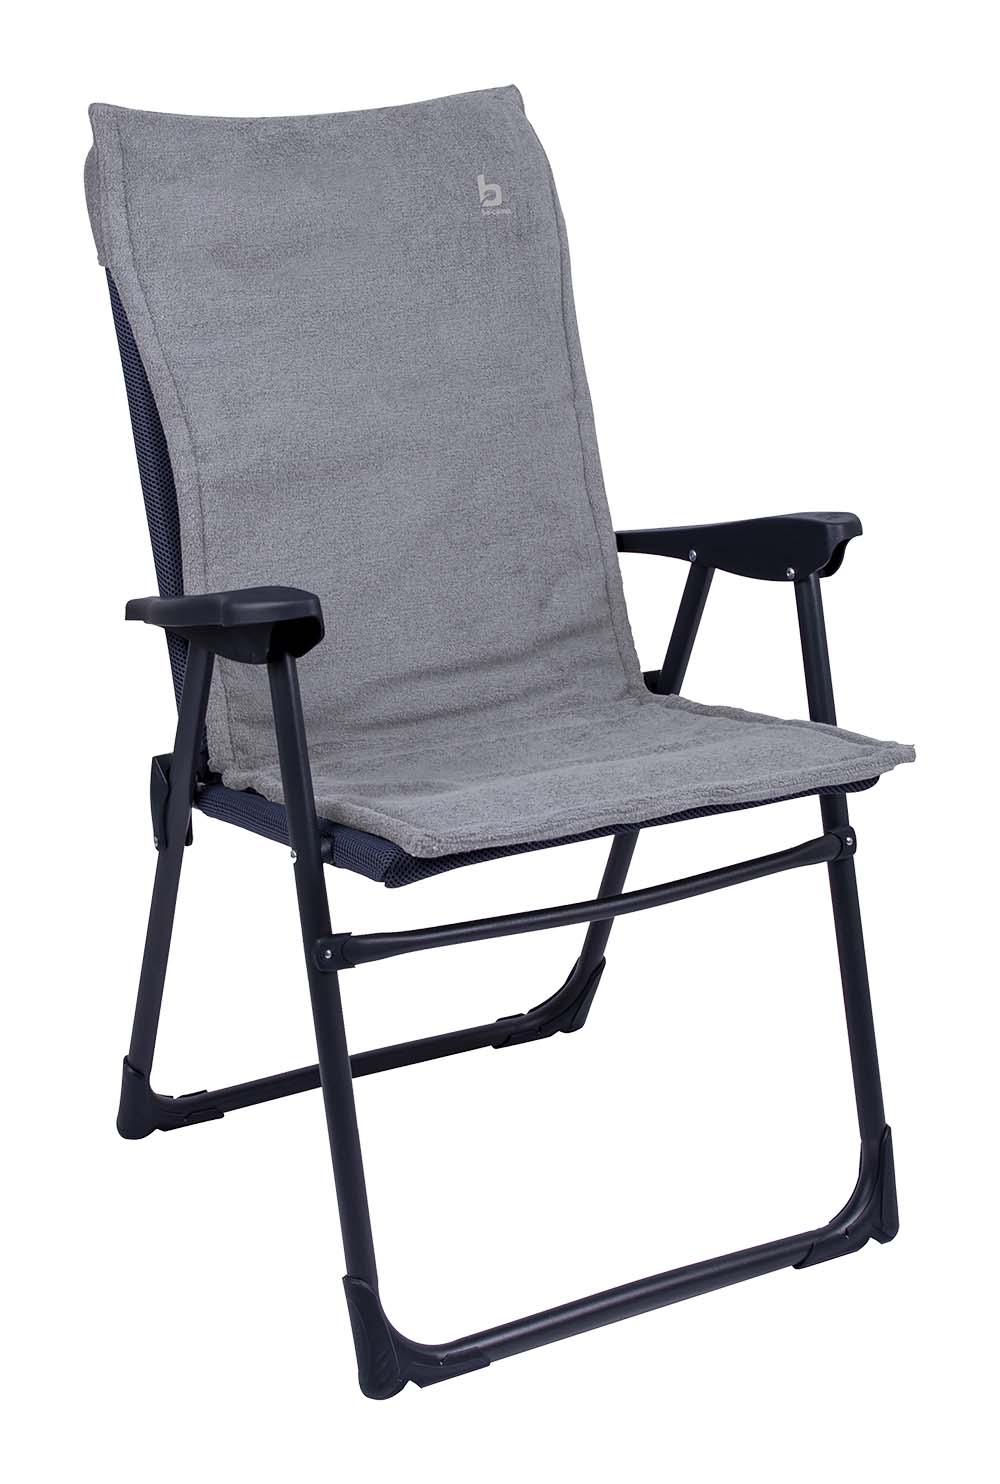 1849267 Een extra zachte stoelhoes voor compacte (kampeer)stoelen. Deze universele stoelhoes zorgt voor optimaal zitcomfort en biedt bescherming aan de stoel (bijvoorbeeld de Copa Rio). Extra comfortabel door het gepolsterde badstof.